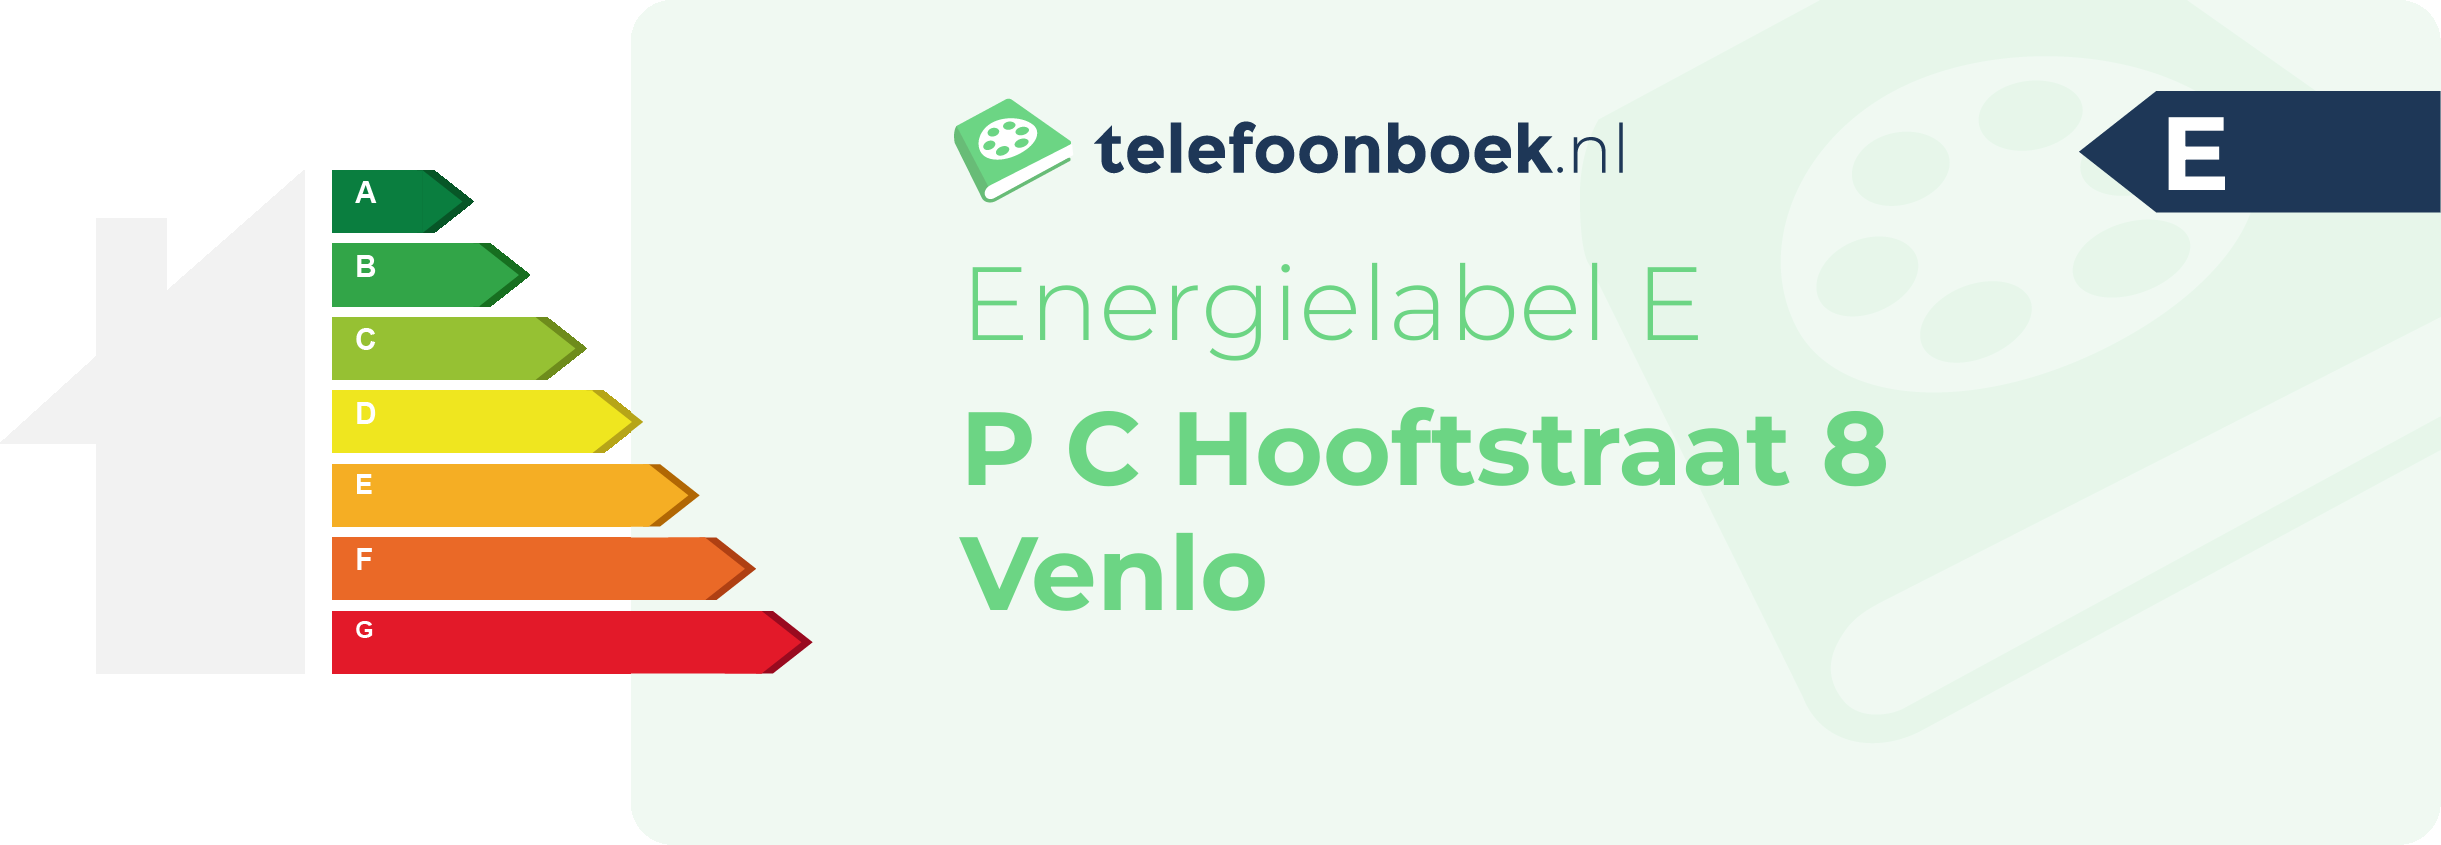 Energielabel P C Hooftstraat 8 Venlo